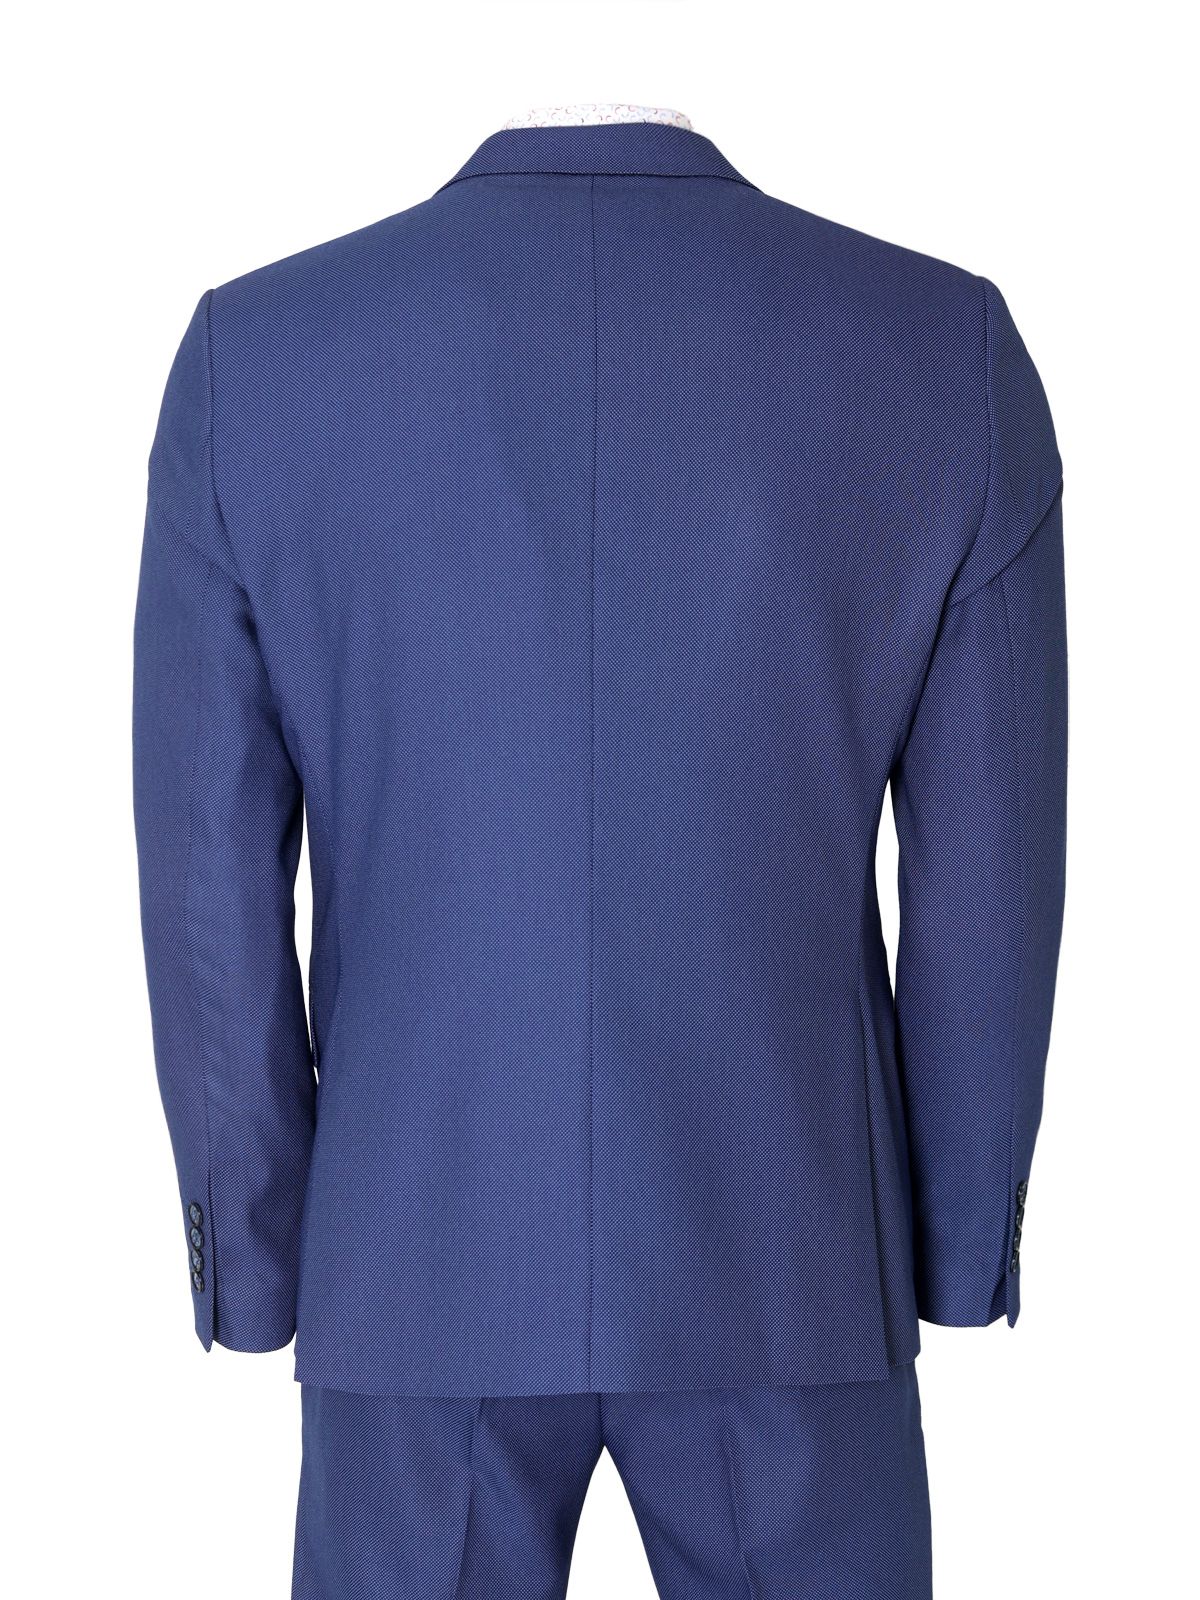 Jachetă pentru bărbați în albastru clasi - 64127 € 149.60 img2